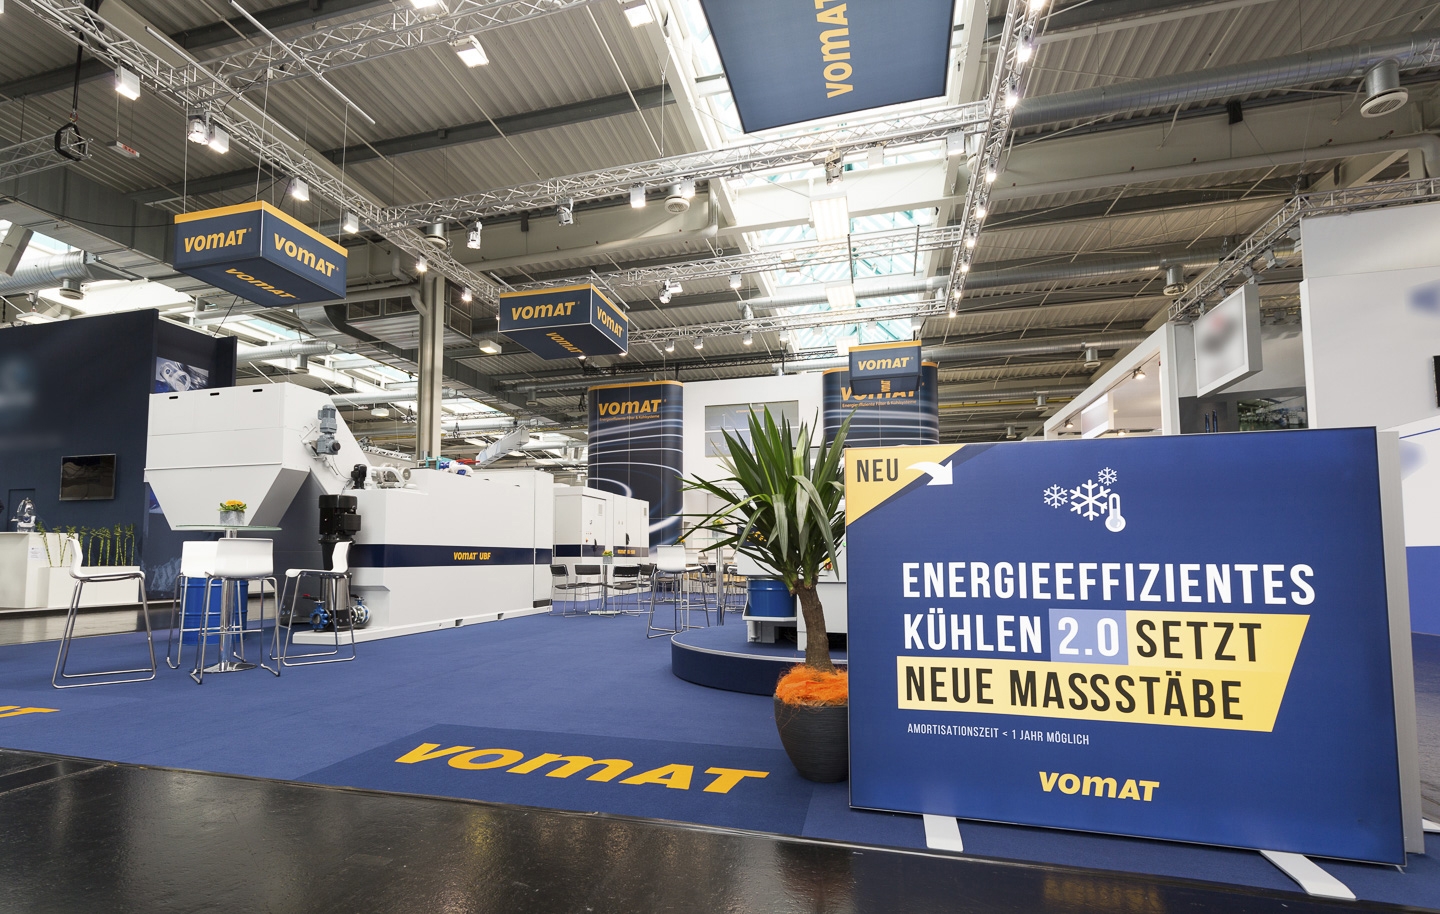 Auf der Grinding Hub in Stuttgart zeigt demonstriert Vomat, wie man mit der richtigen Klimatechnik Restenergie aus der Produktion zum Heizen oder Kühlen der Produktionshallen verwenden kann.  